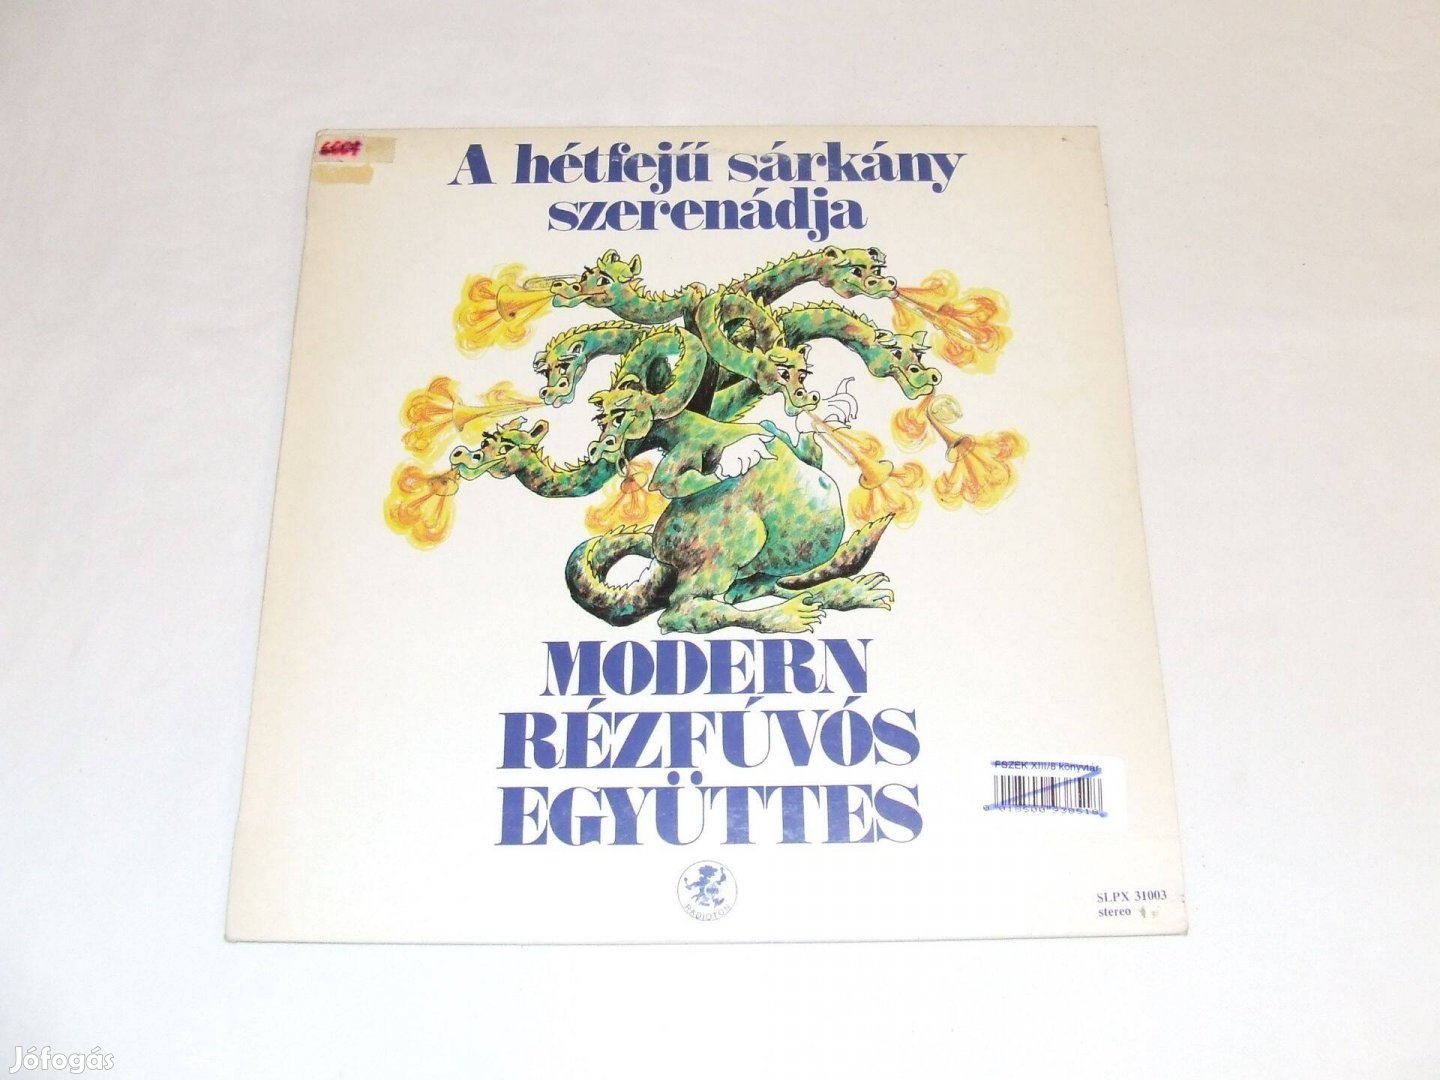 Modern Rézfúvós Együttes: A hétfejű sárkány szerenádja - bakelit lemez